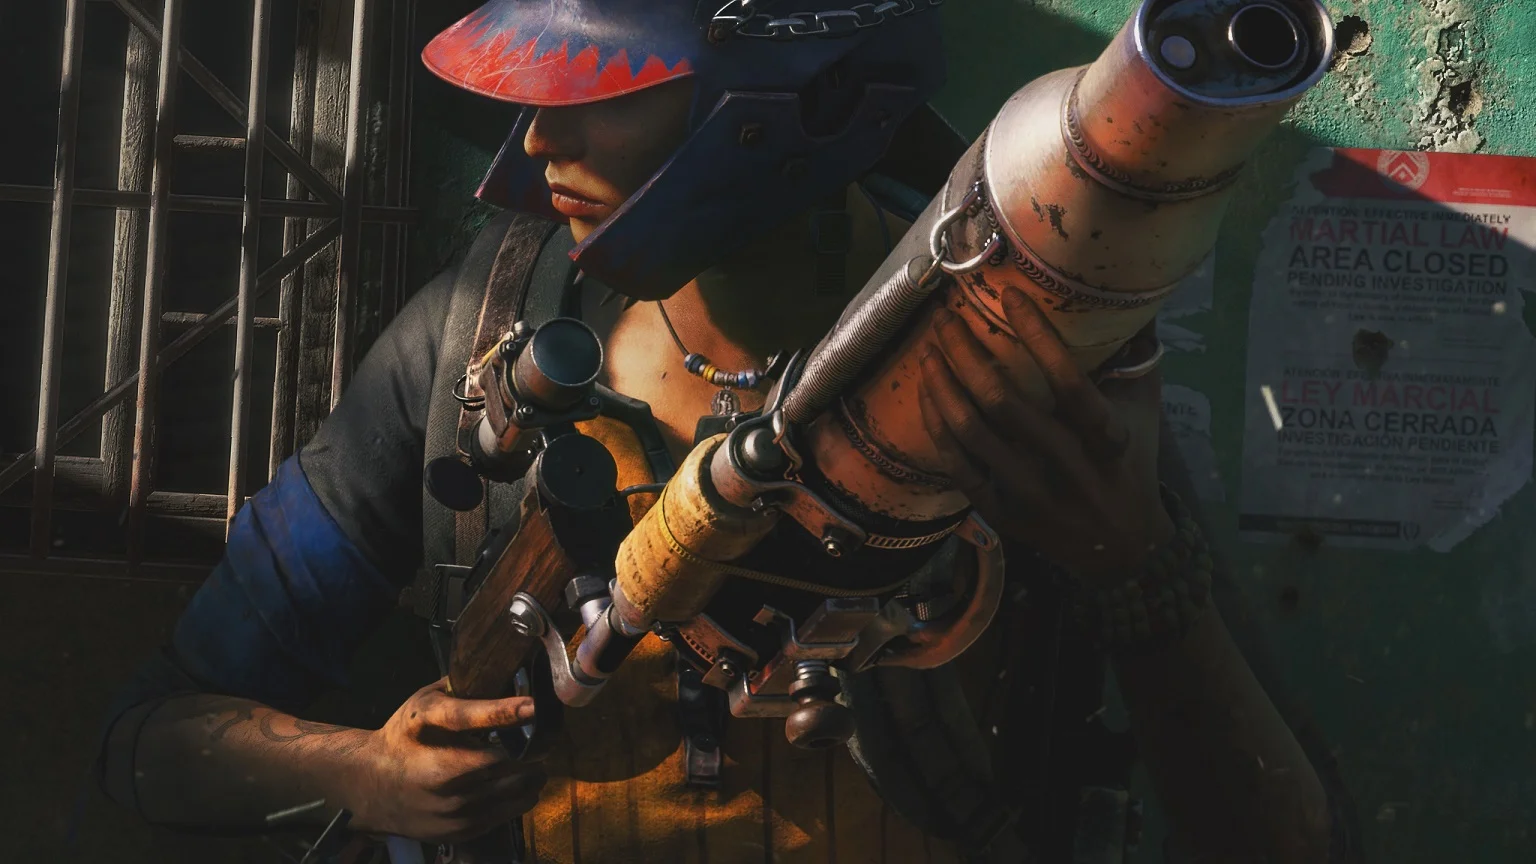 В Far Cry 6 восемь обычных дробовиков и пять уникальных, с особым дизайном, который нельзя нельзя изменить на верстаке. Впрочем, не все тринадцать стволов одинаково хорошо подходят для сражений с армией диктатора Антона Кастильо. Рассказываем, какими дробовиками в Far Cry 6 лучше вооружиться в первую очередь.